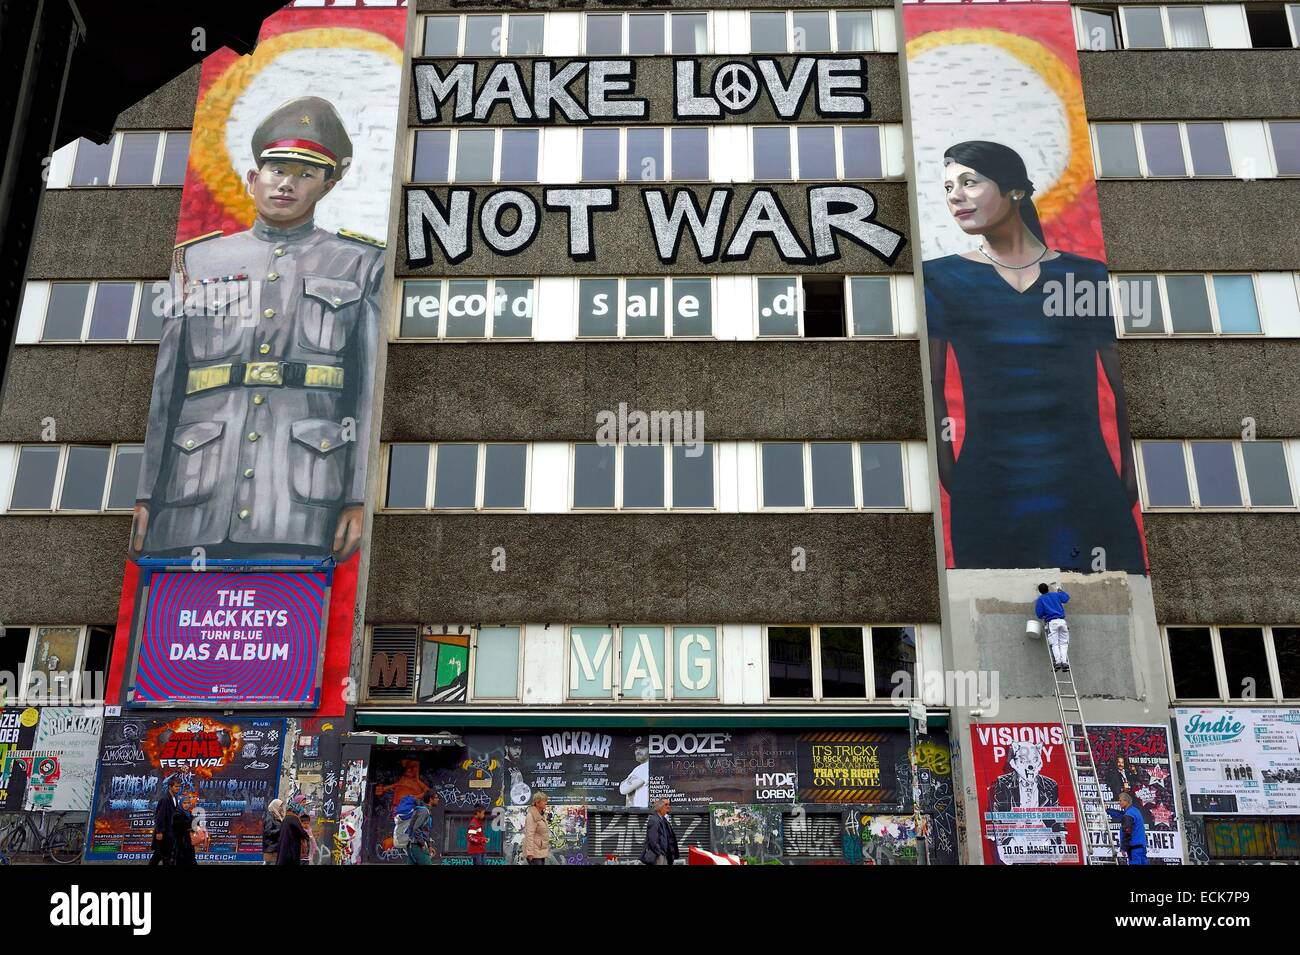 Alemania, Berlín, distrito de Friedrichshain-Kreuzberg, street art trabajar encima del Mag¡net club Oberbaum¡brⁿcke ?hacer el amor y no la guerra? Foto de stock